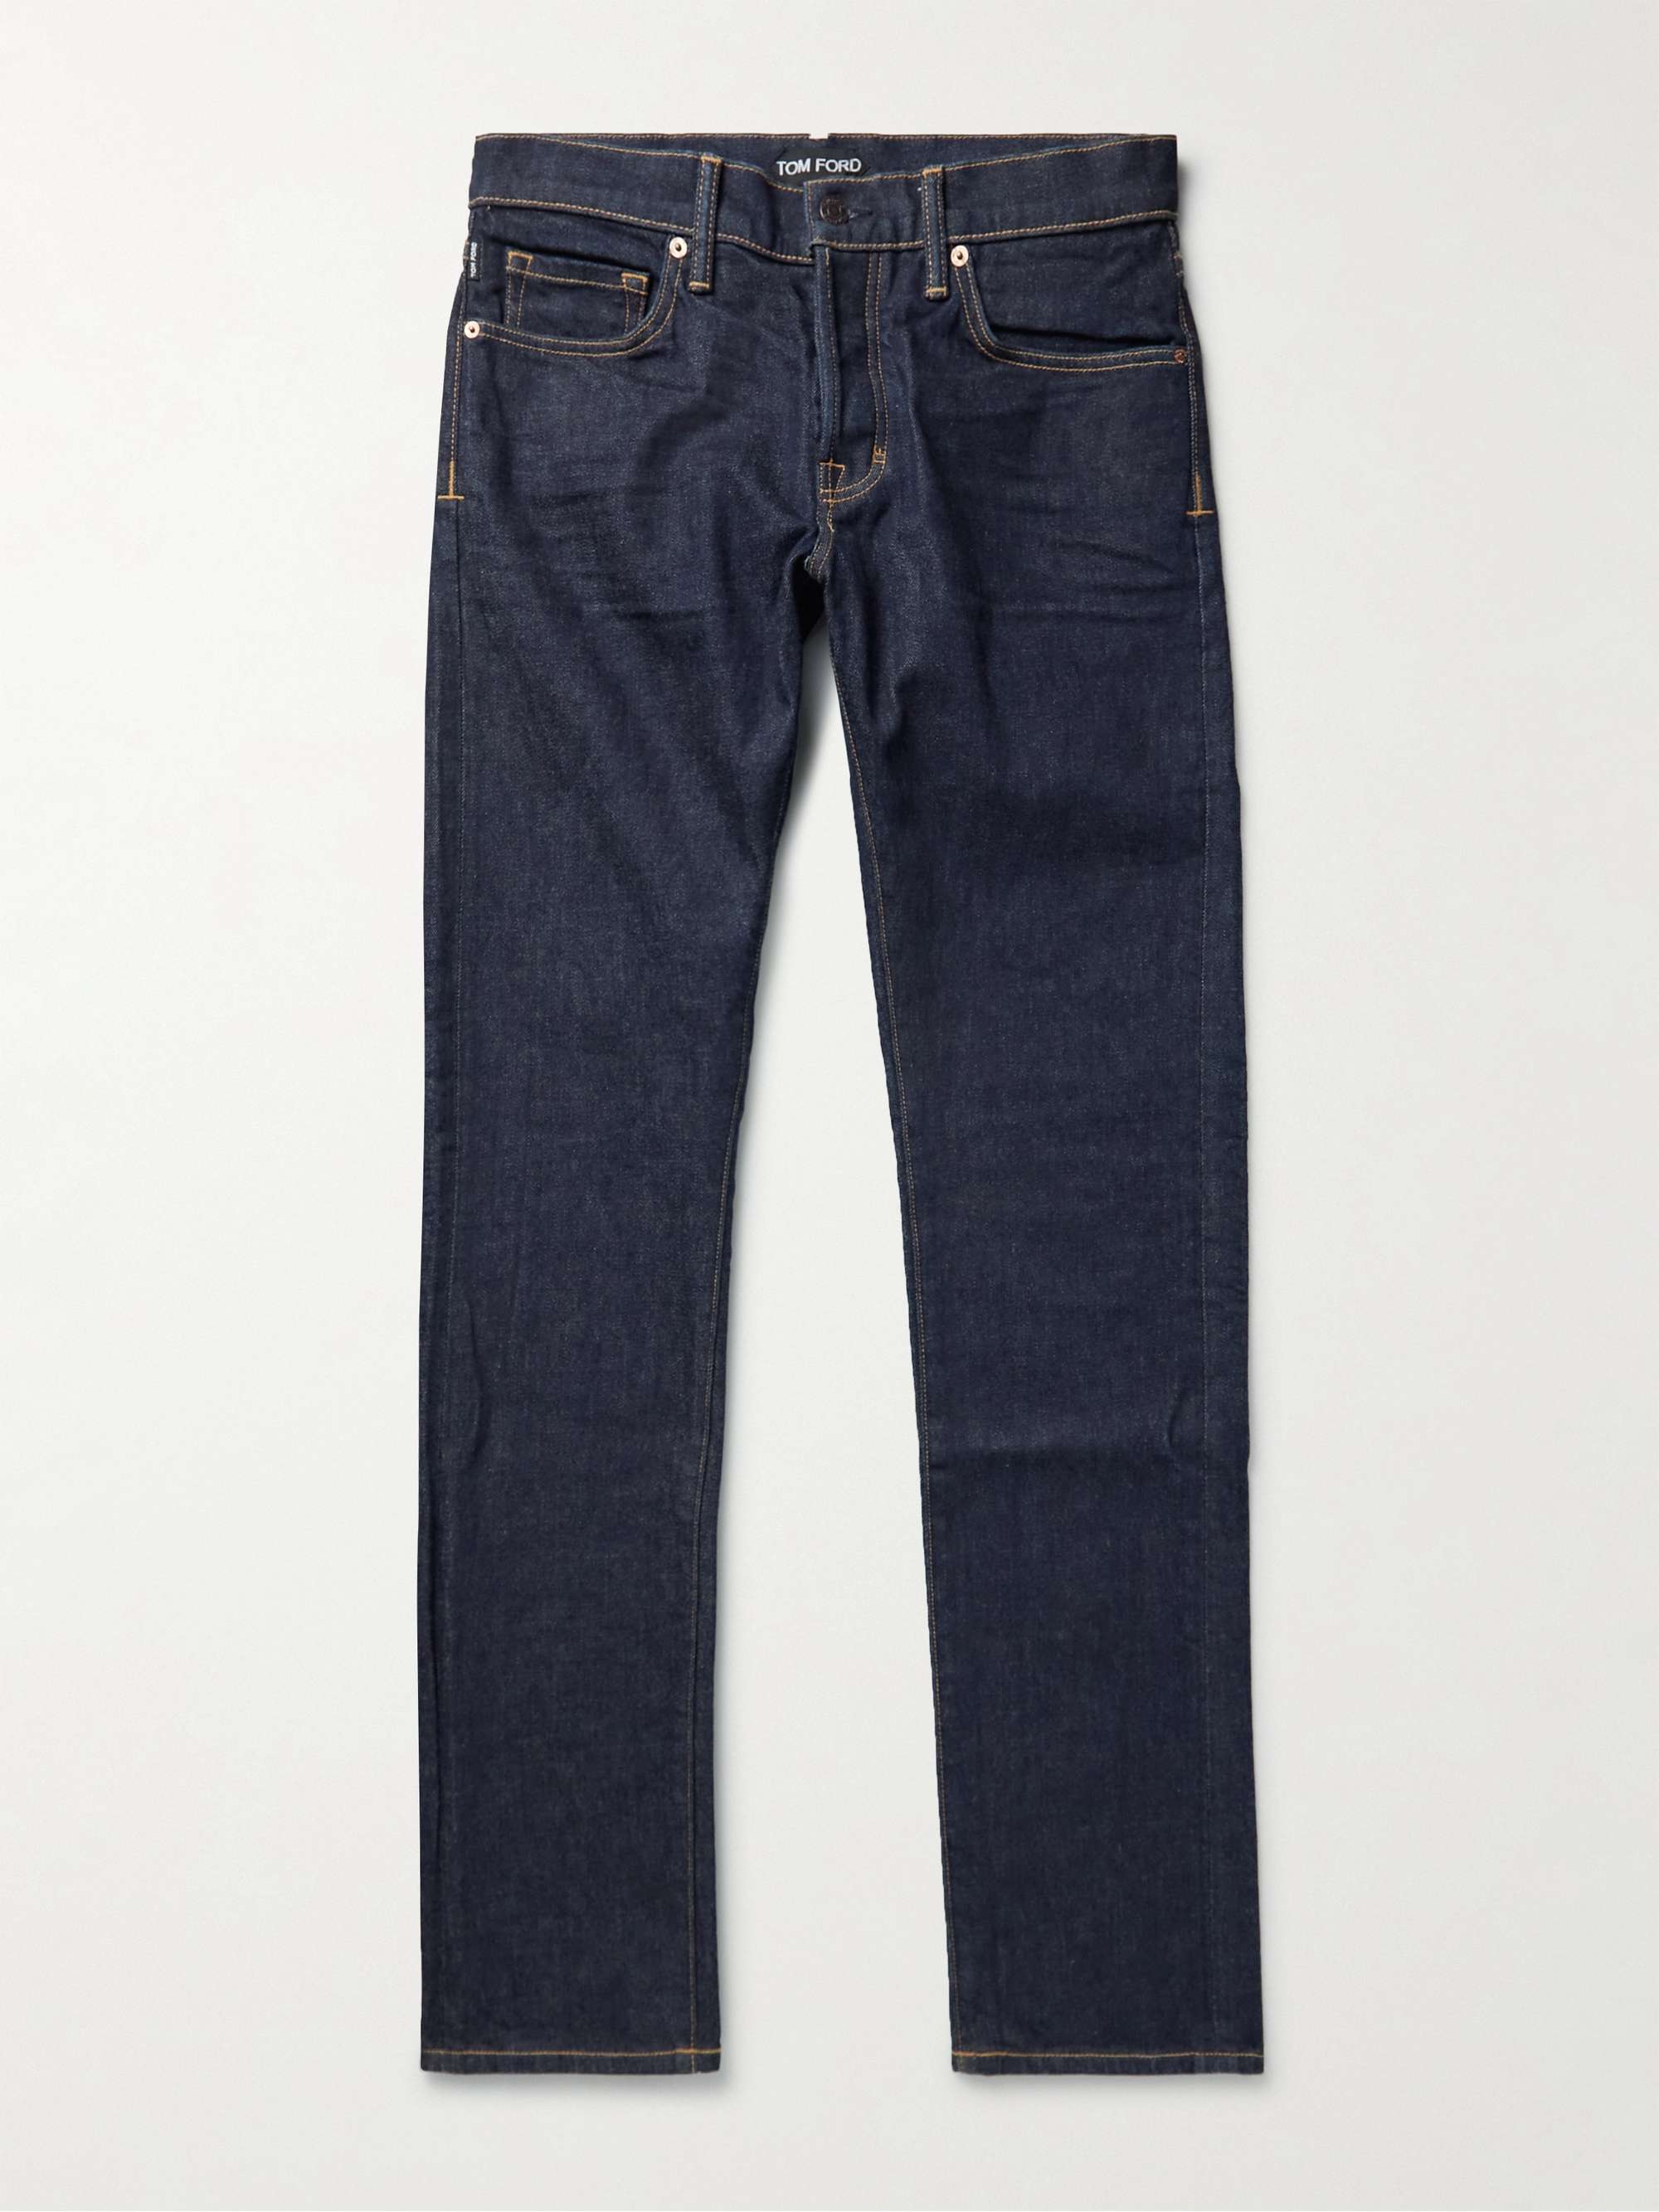 TOM FORD Slim-Fit Jeans | MR PORTER